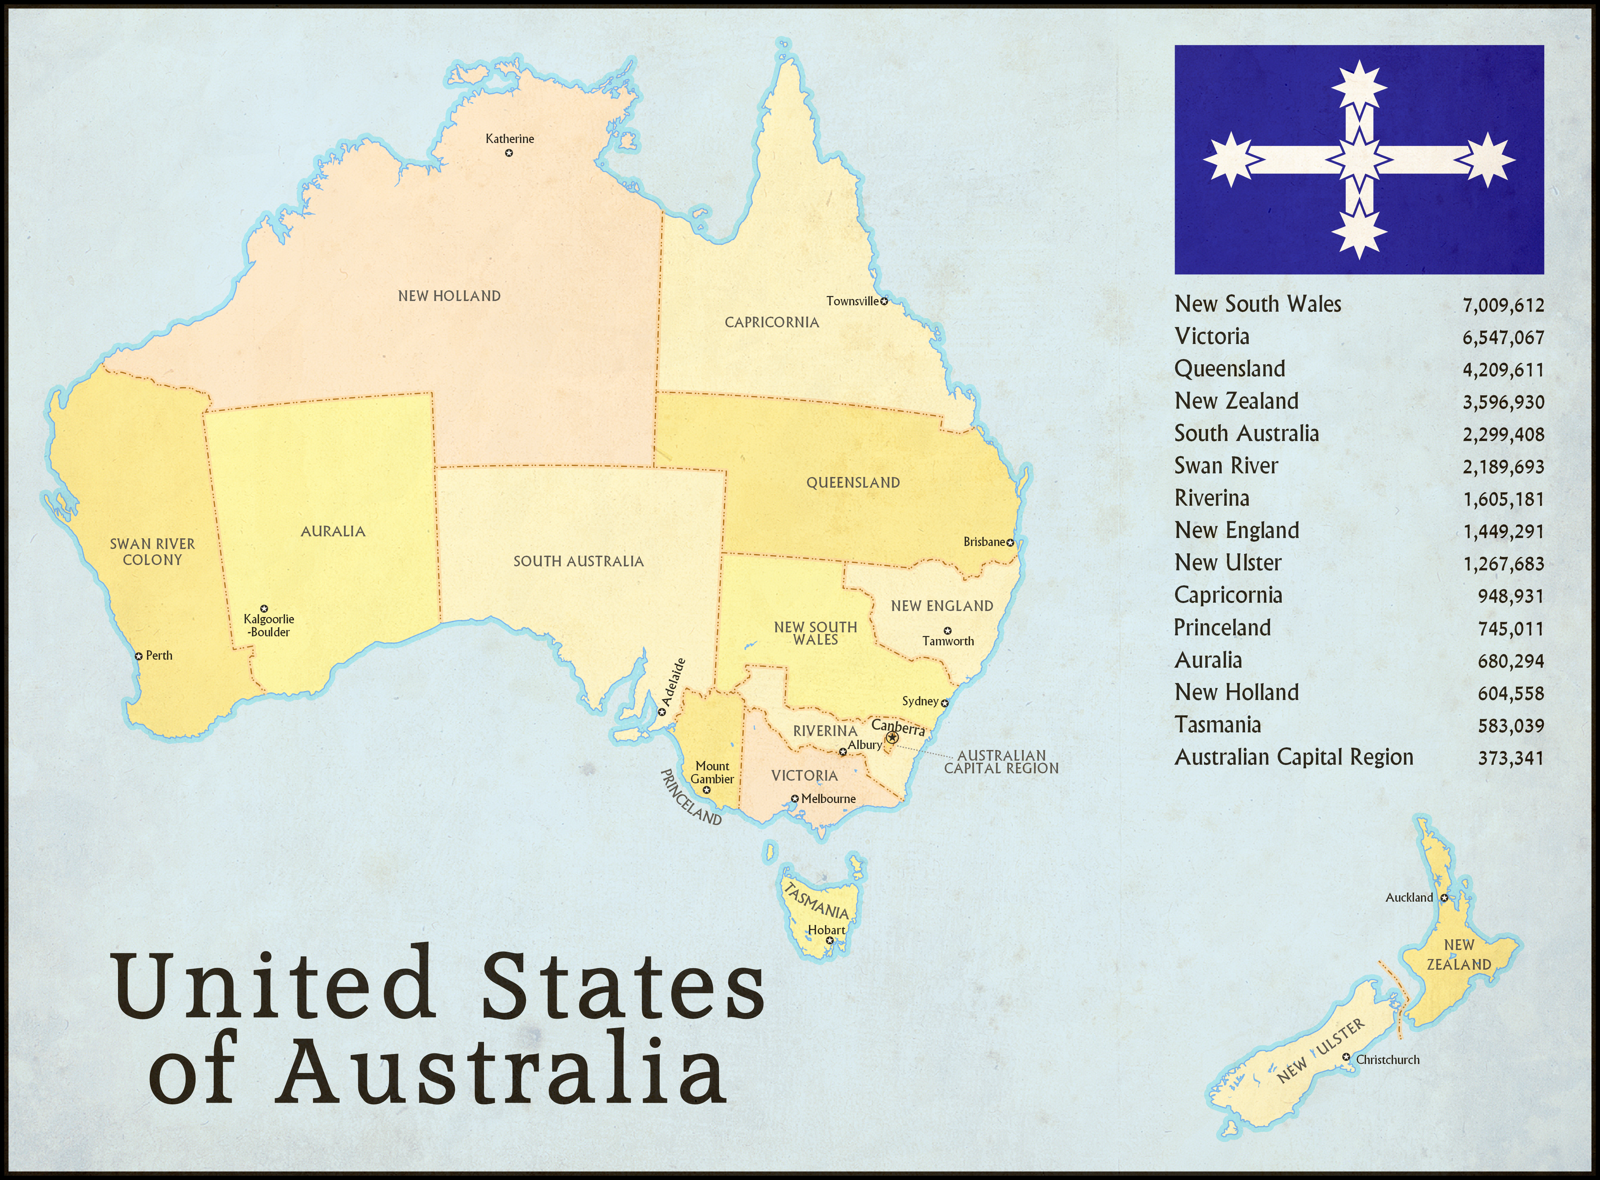 State Австралии. Штат новый Южный Уэльс Австралия на карте. Новый Южный Уэльс Австралия на карте. Штаты Австралии на карте.